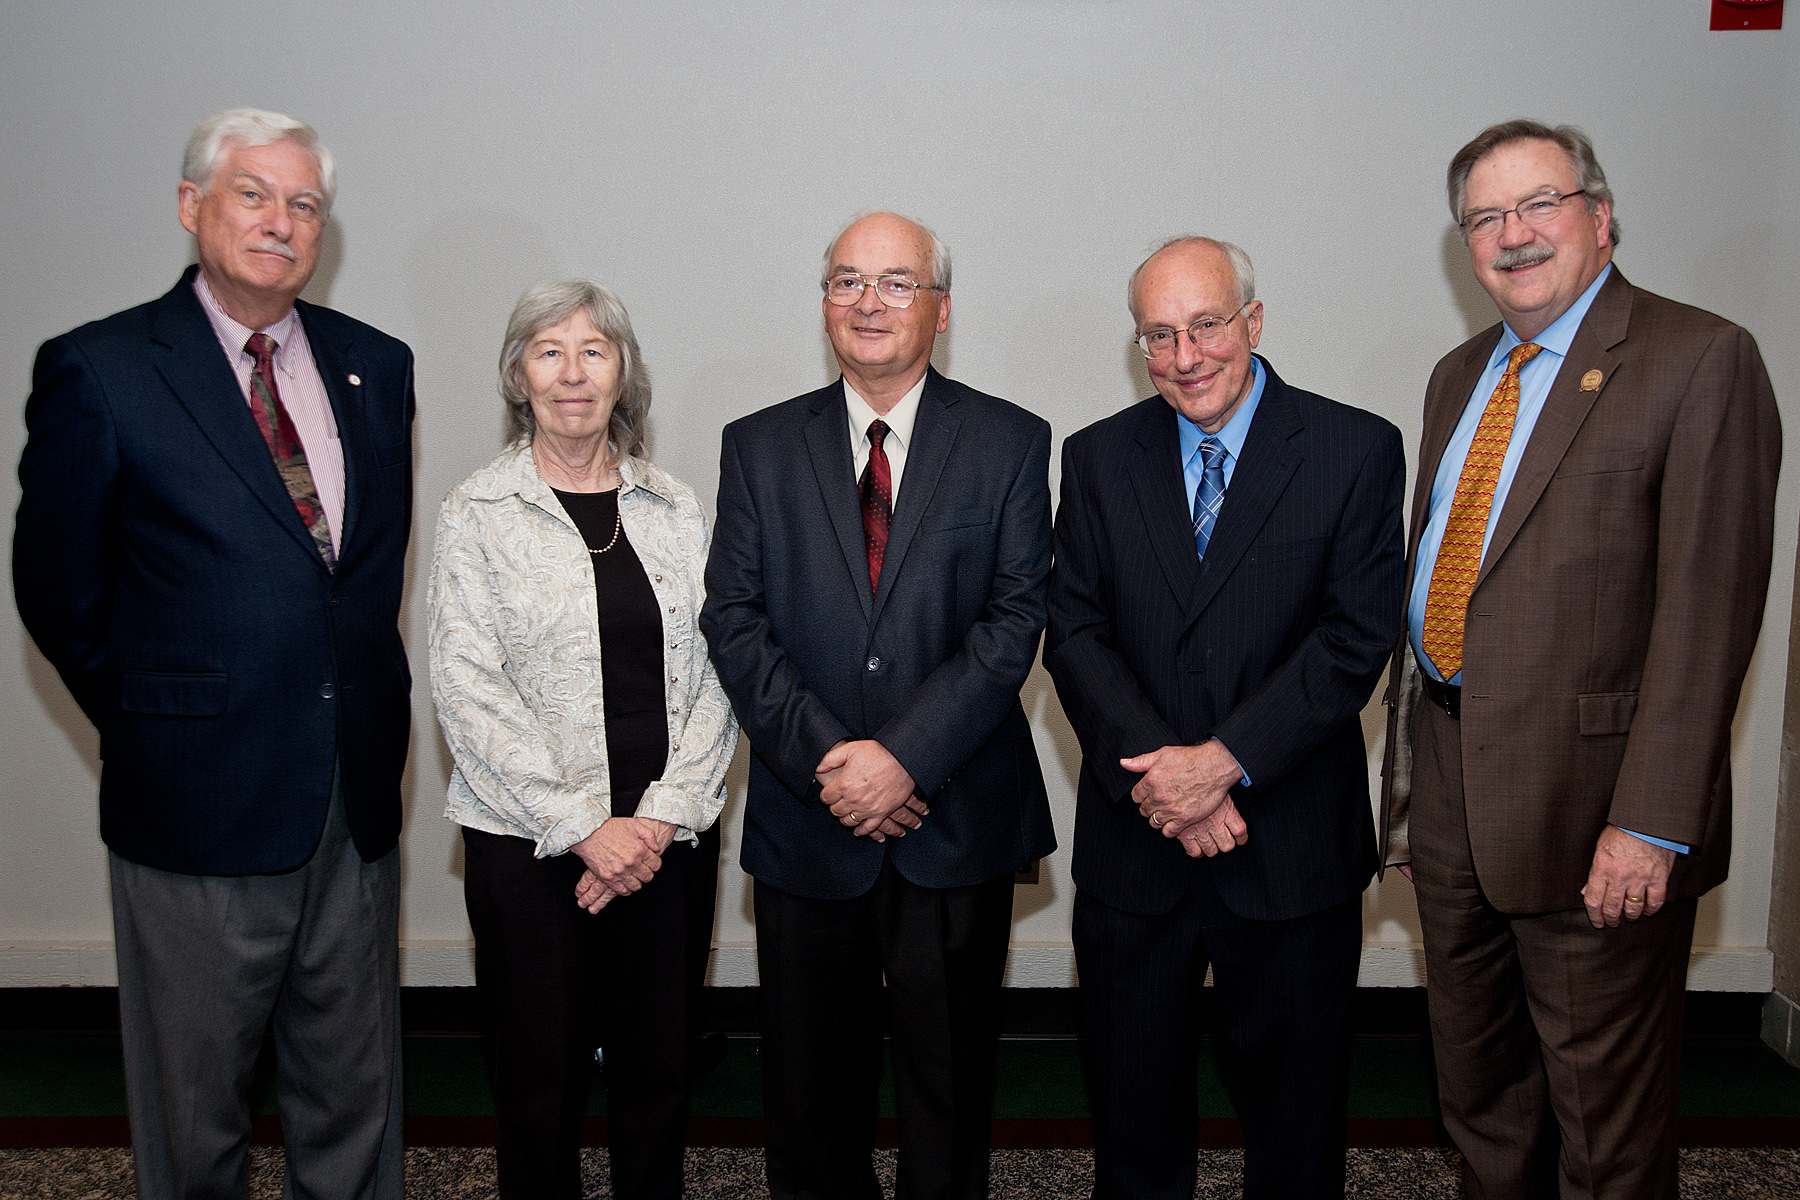 (Left to Right): Klaus J. Schulz, Peggy Chun, SCSE Dean James P. Riehl, Joseph Gallian, Chancellor Lendley C. Black.